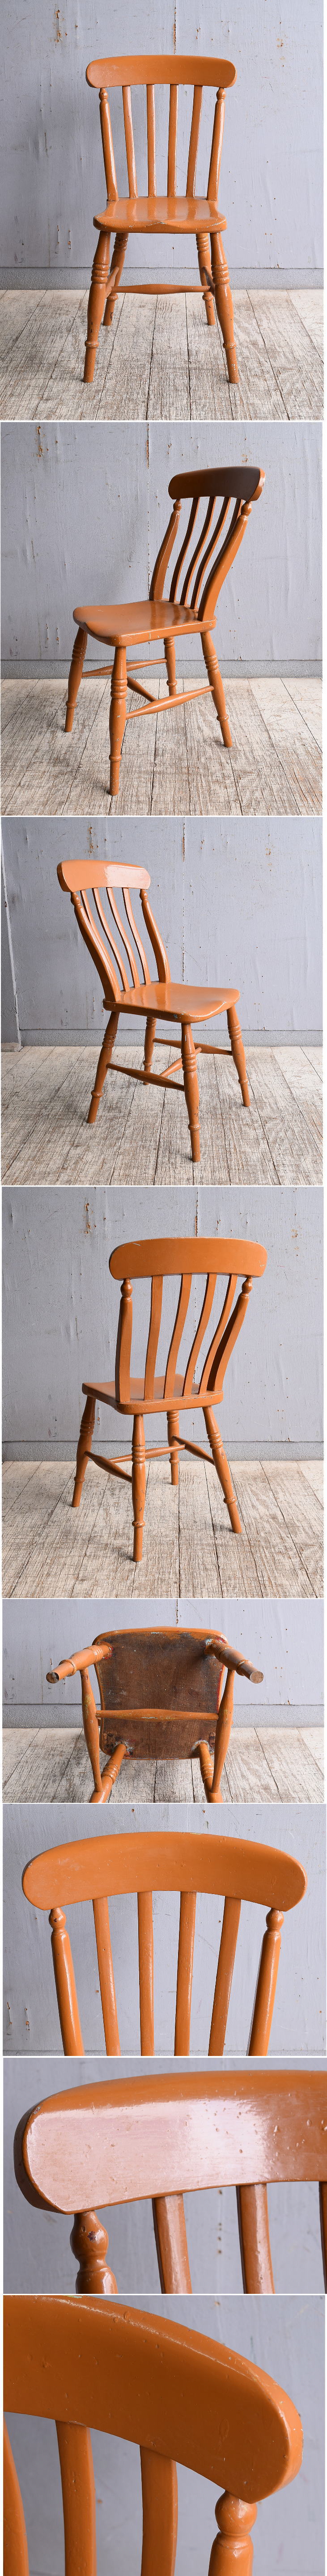 イギリス アンティーク家具 キッチンチェア 椅子 10393